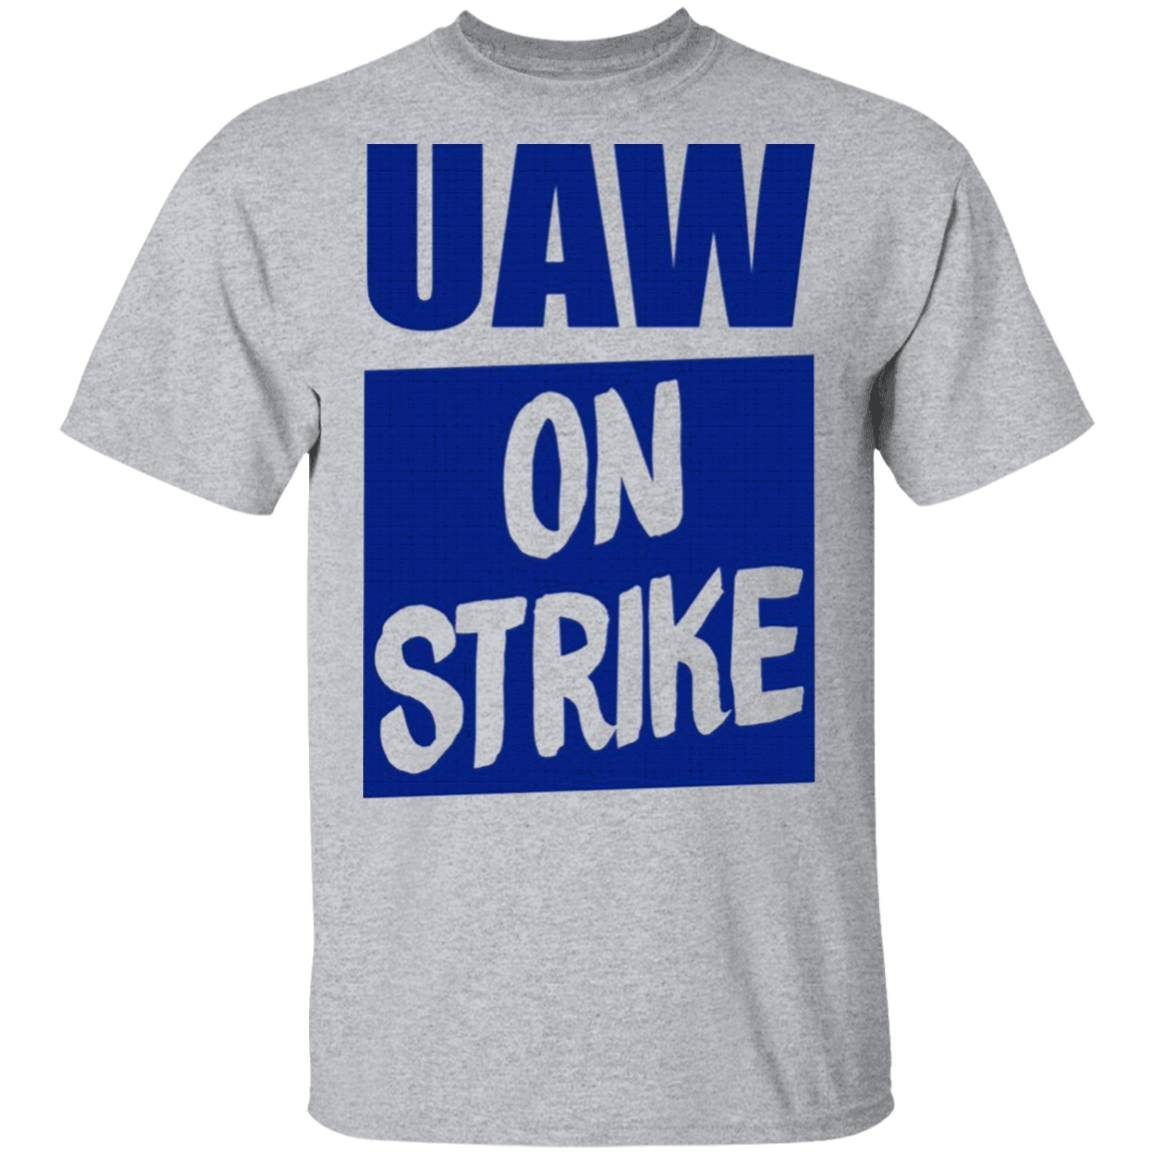 Striking Uaw Workers Uaw On Strike shirt